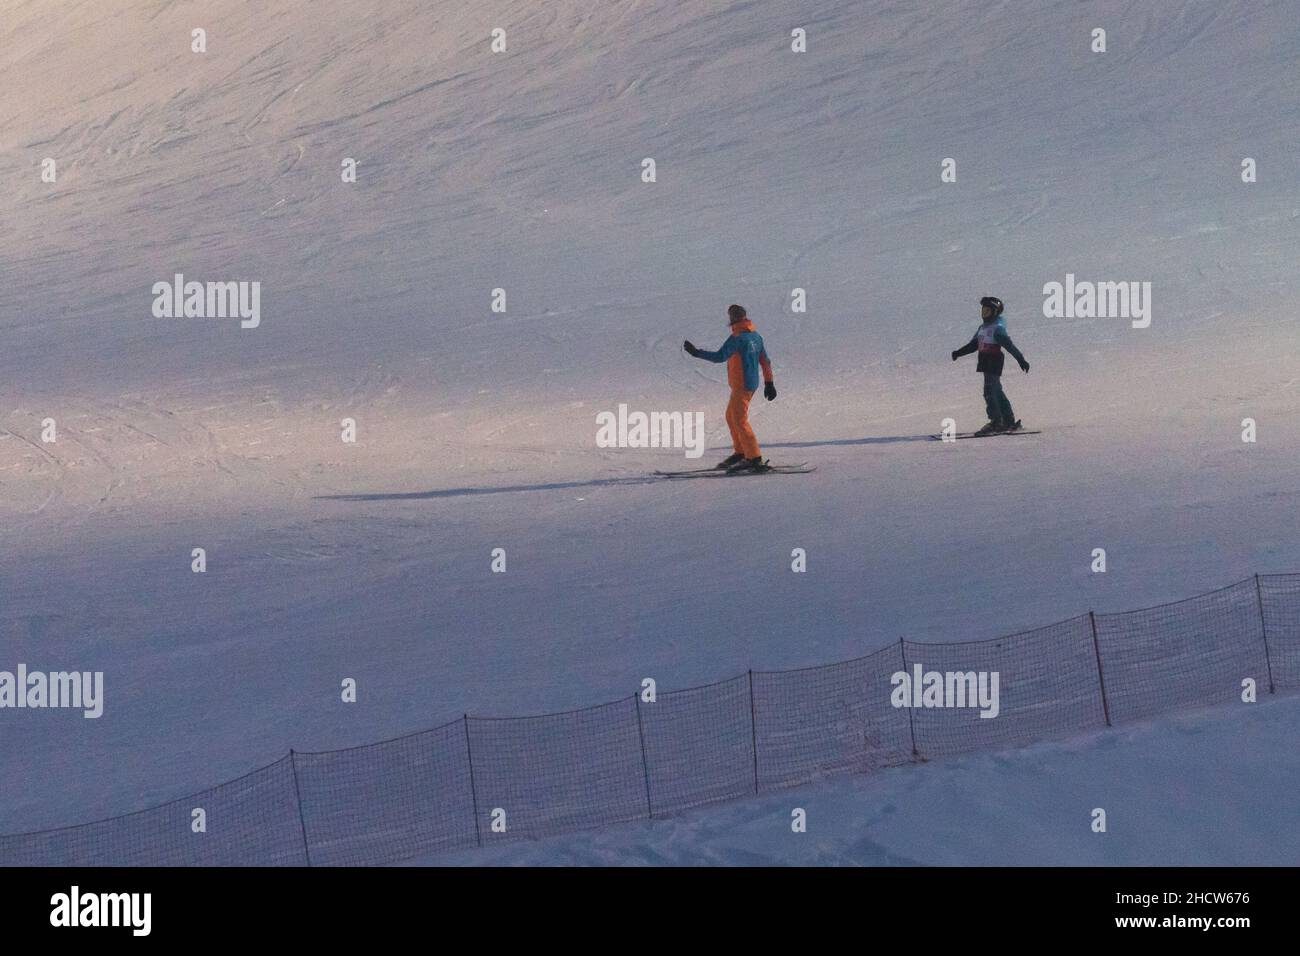 Skiing in Wiezyca, Poland. December 11th 2021 © Wojciech Strozyk / Alamy Stock Photo Stock Photo